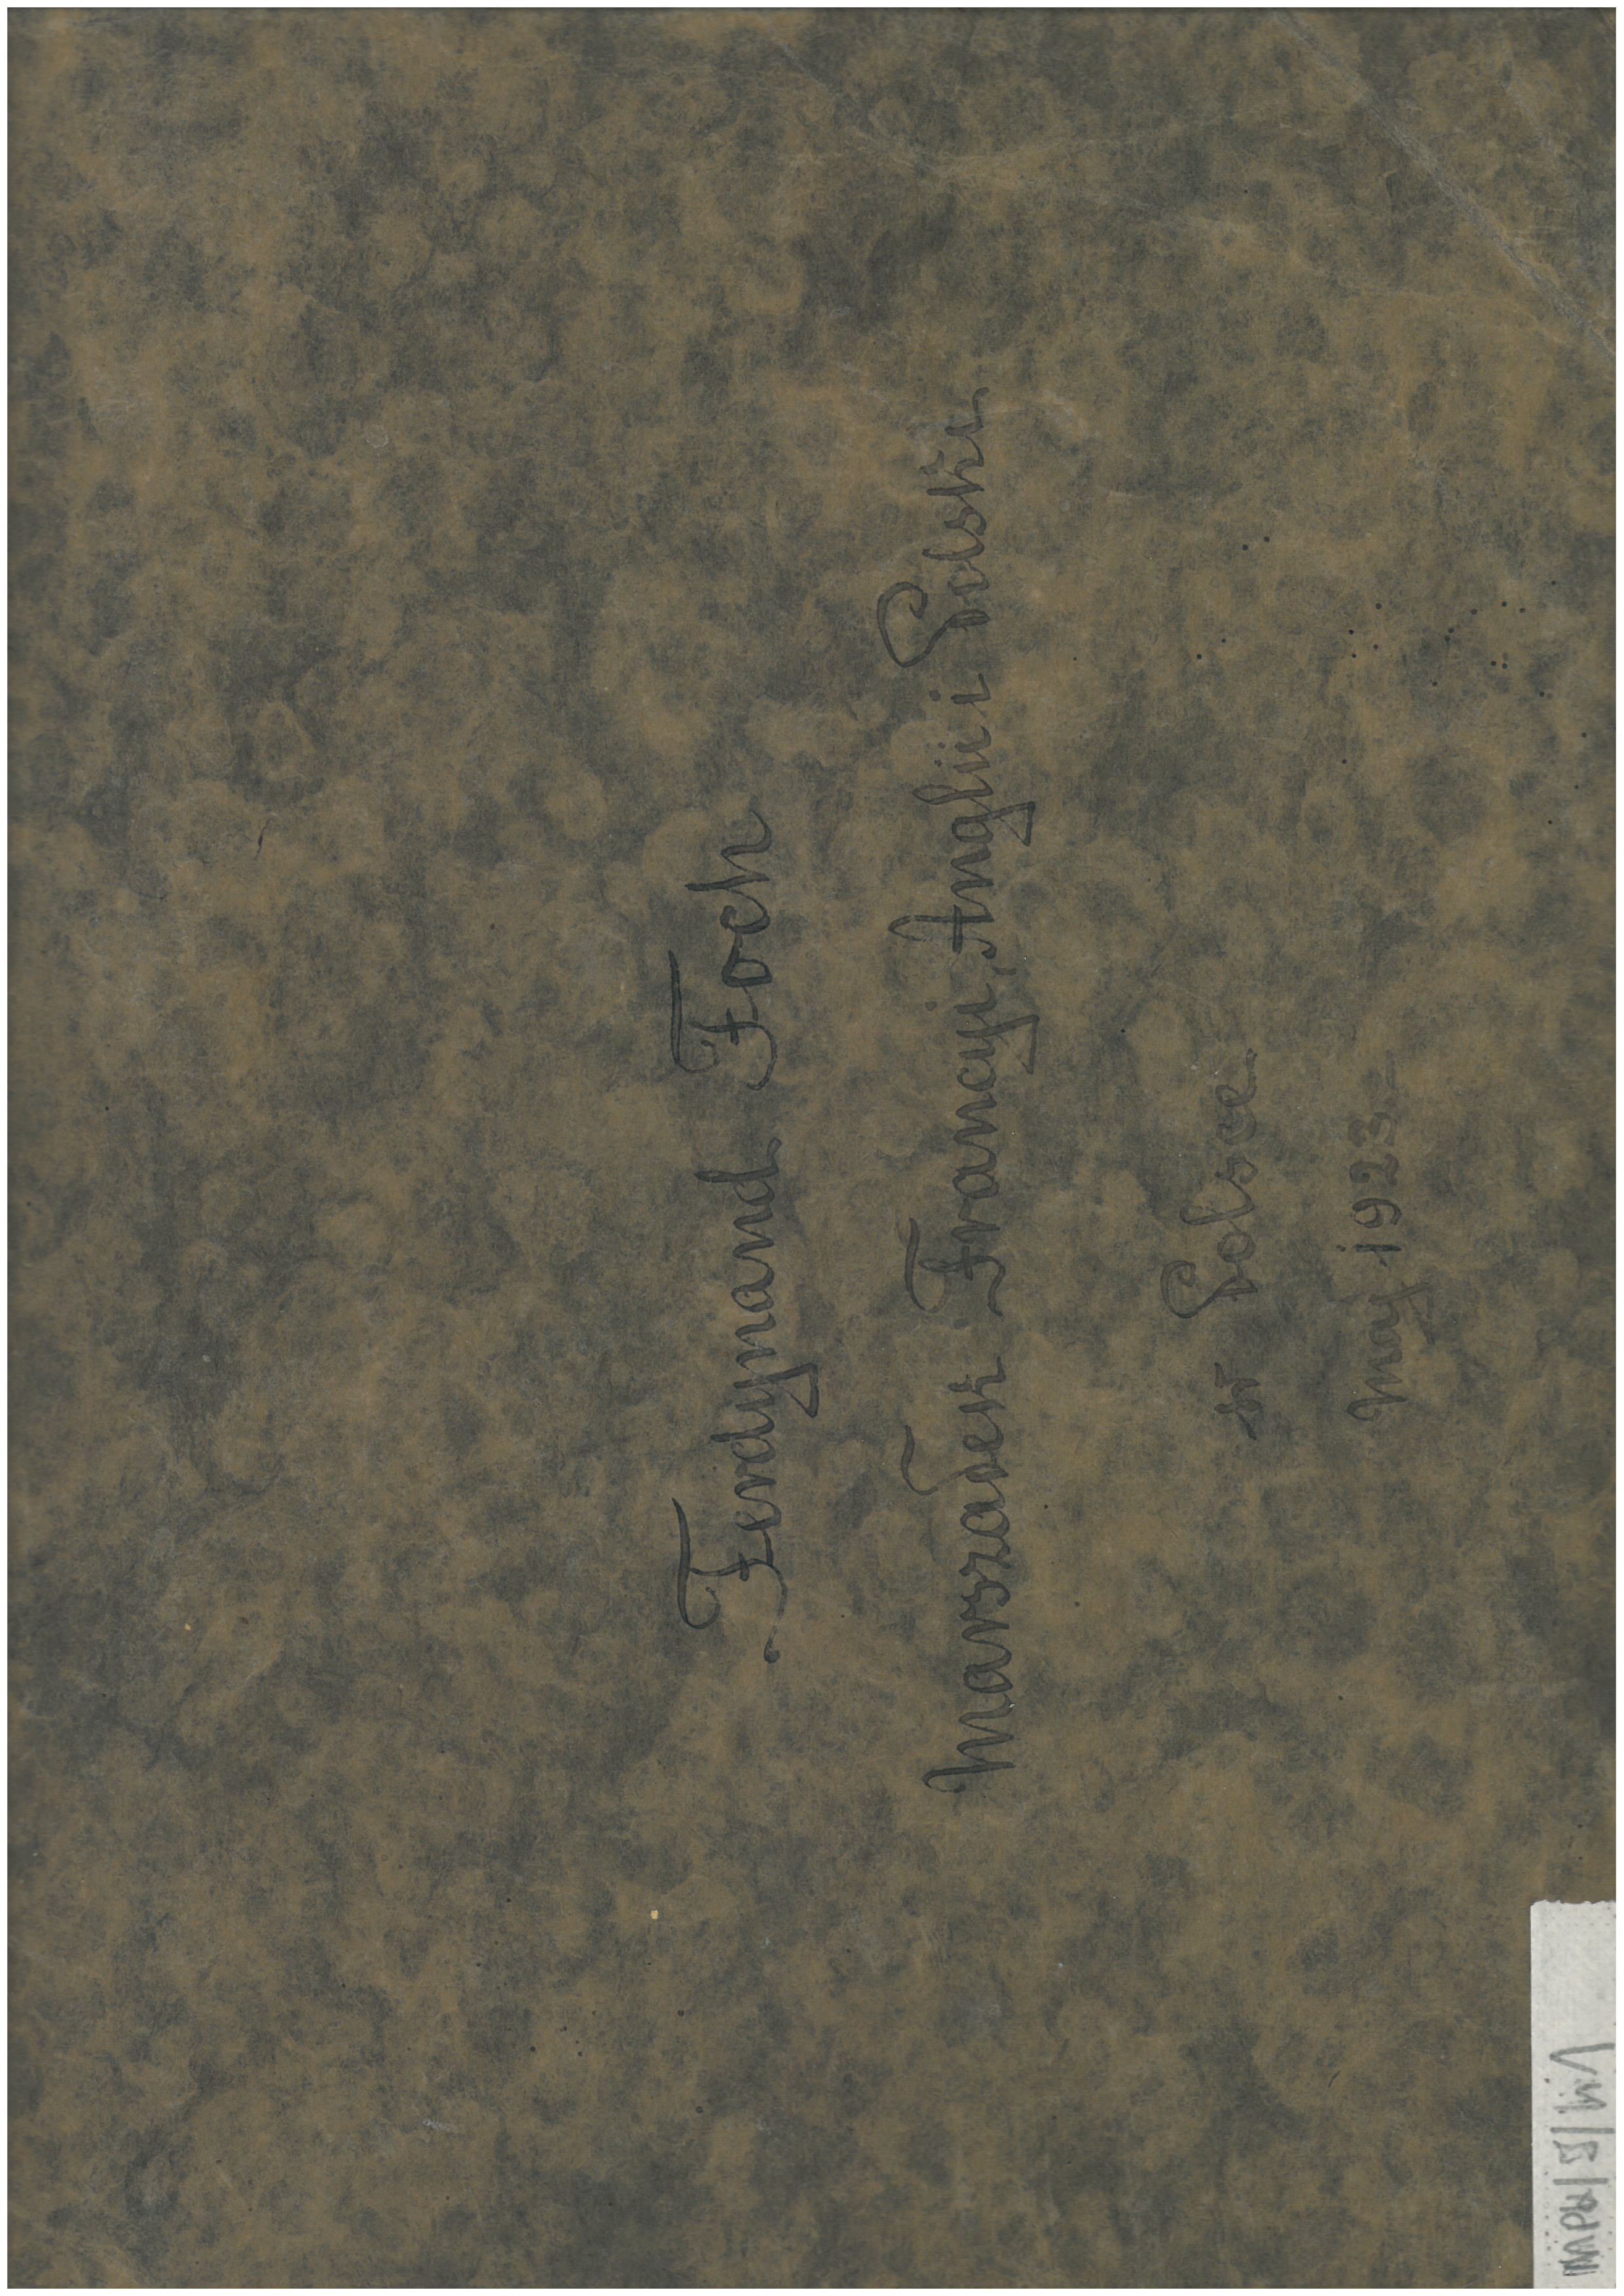 Zdjęcie strony tytułowej albumu pamiątkowego – na ciemnym, niejednolitym tle pośrodku napis „Ferdynand Foch Marszałek Francyi, Angii i Polski w Polsce. Maj 1923”.